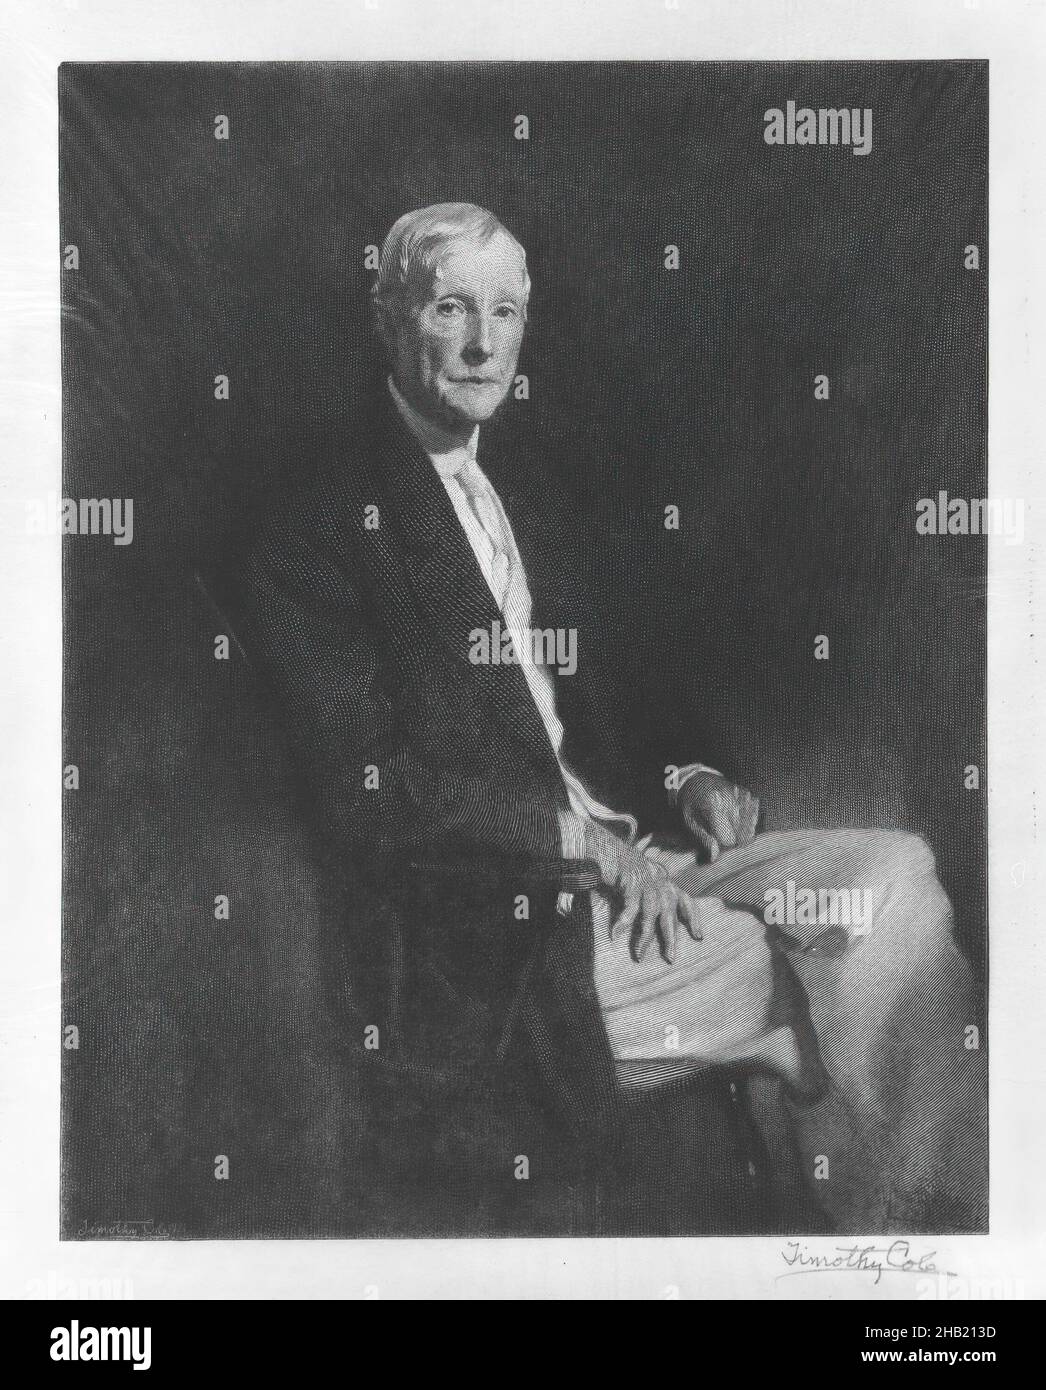 John D. Rockefeller III (1906-1978) - Find a Grave Memorial